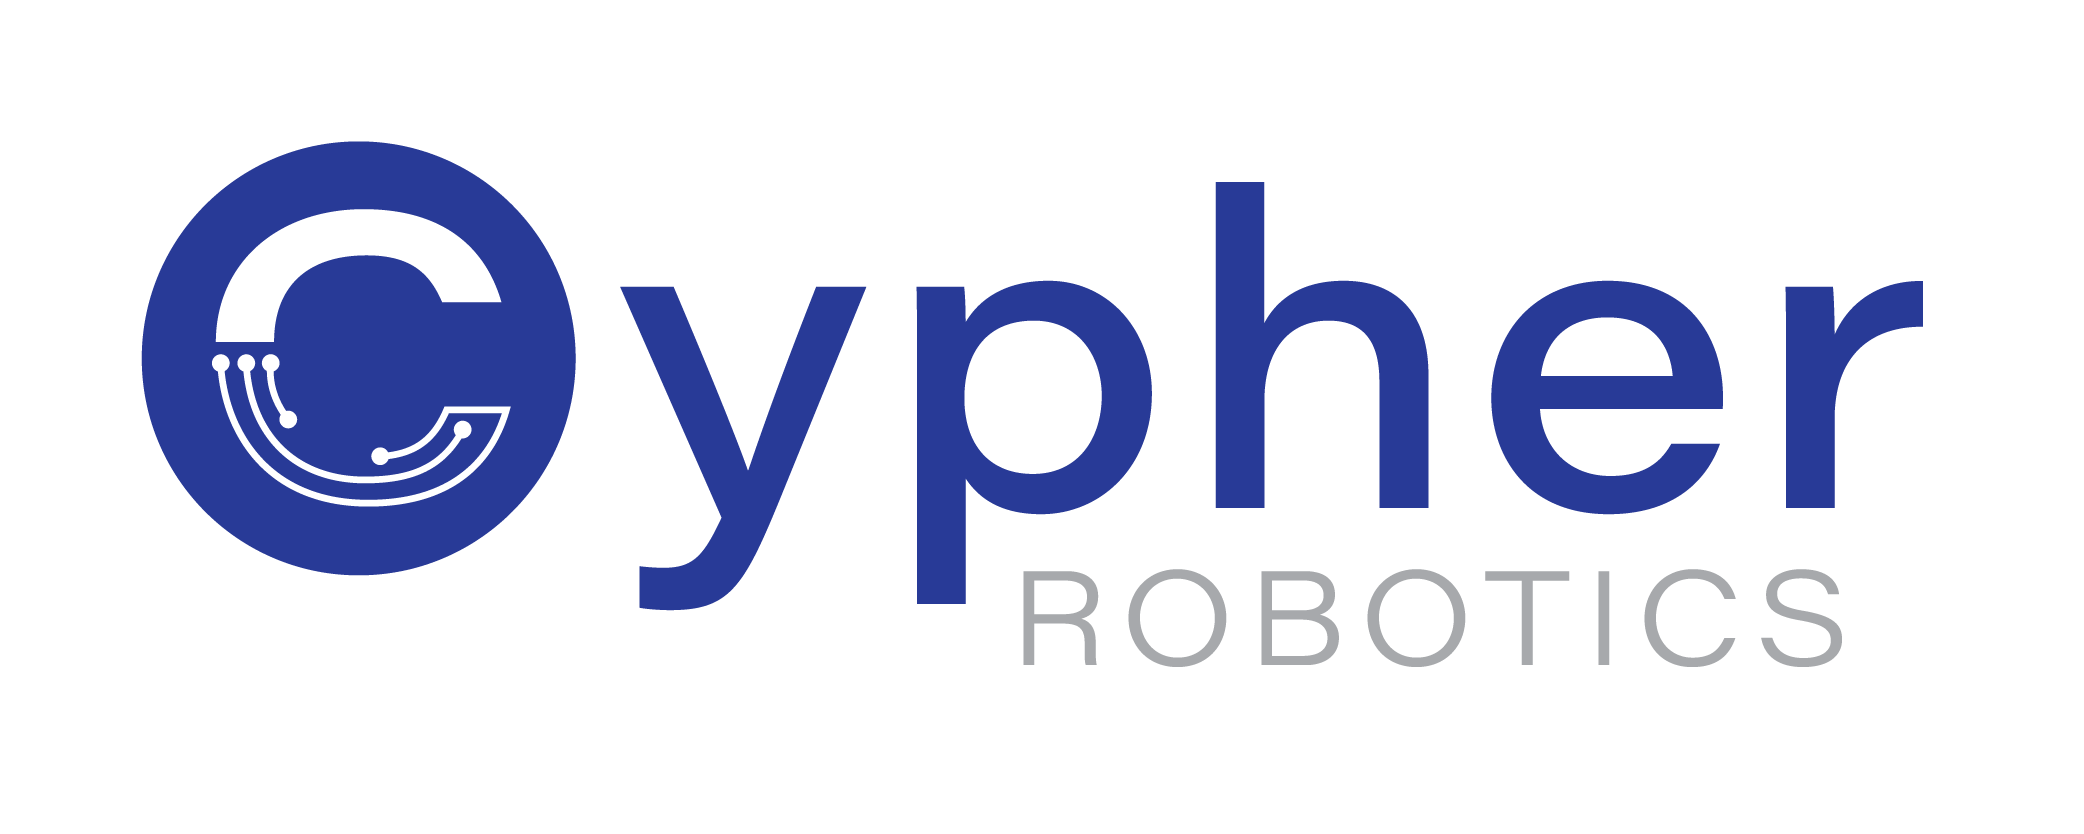 Cypher Robotics logo